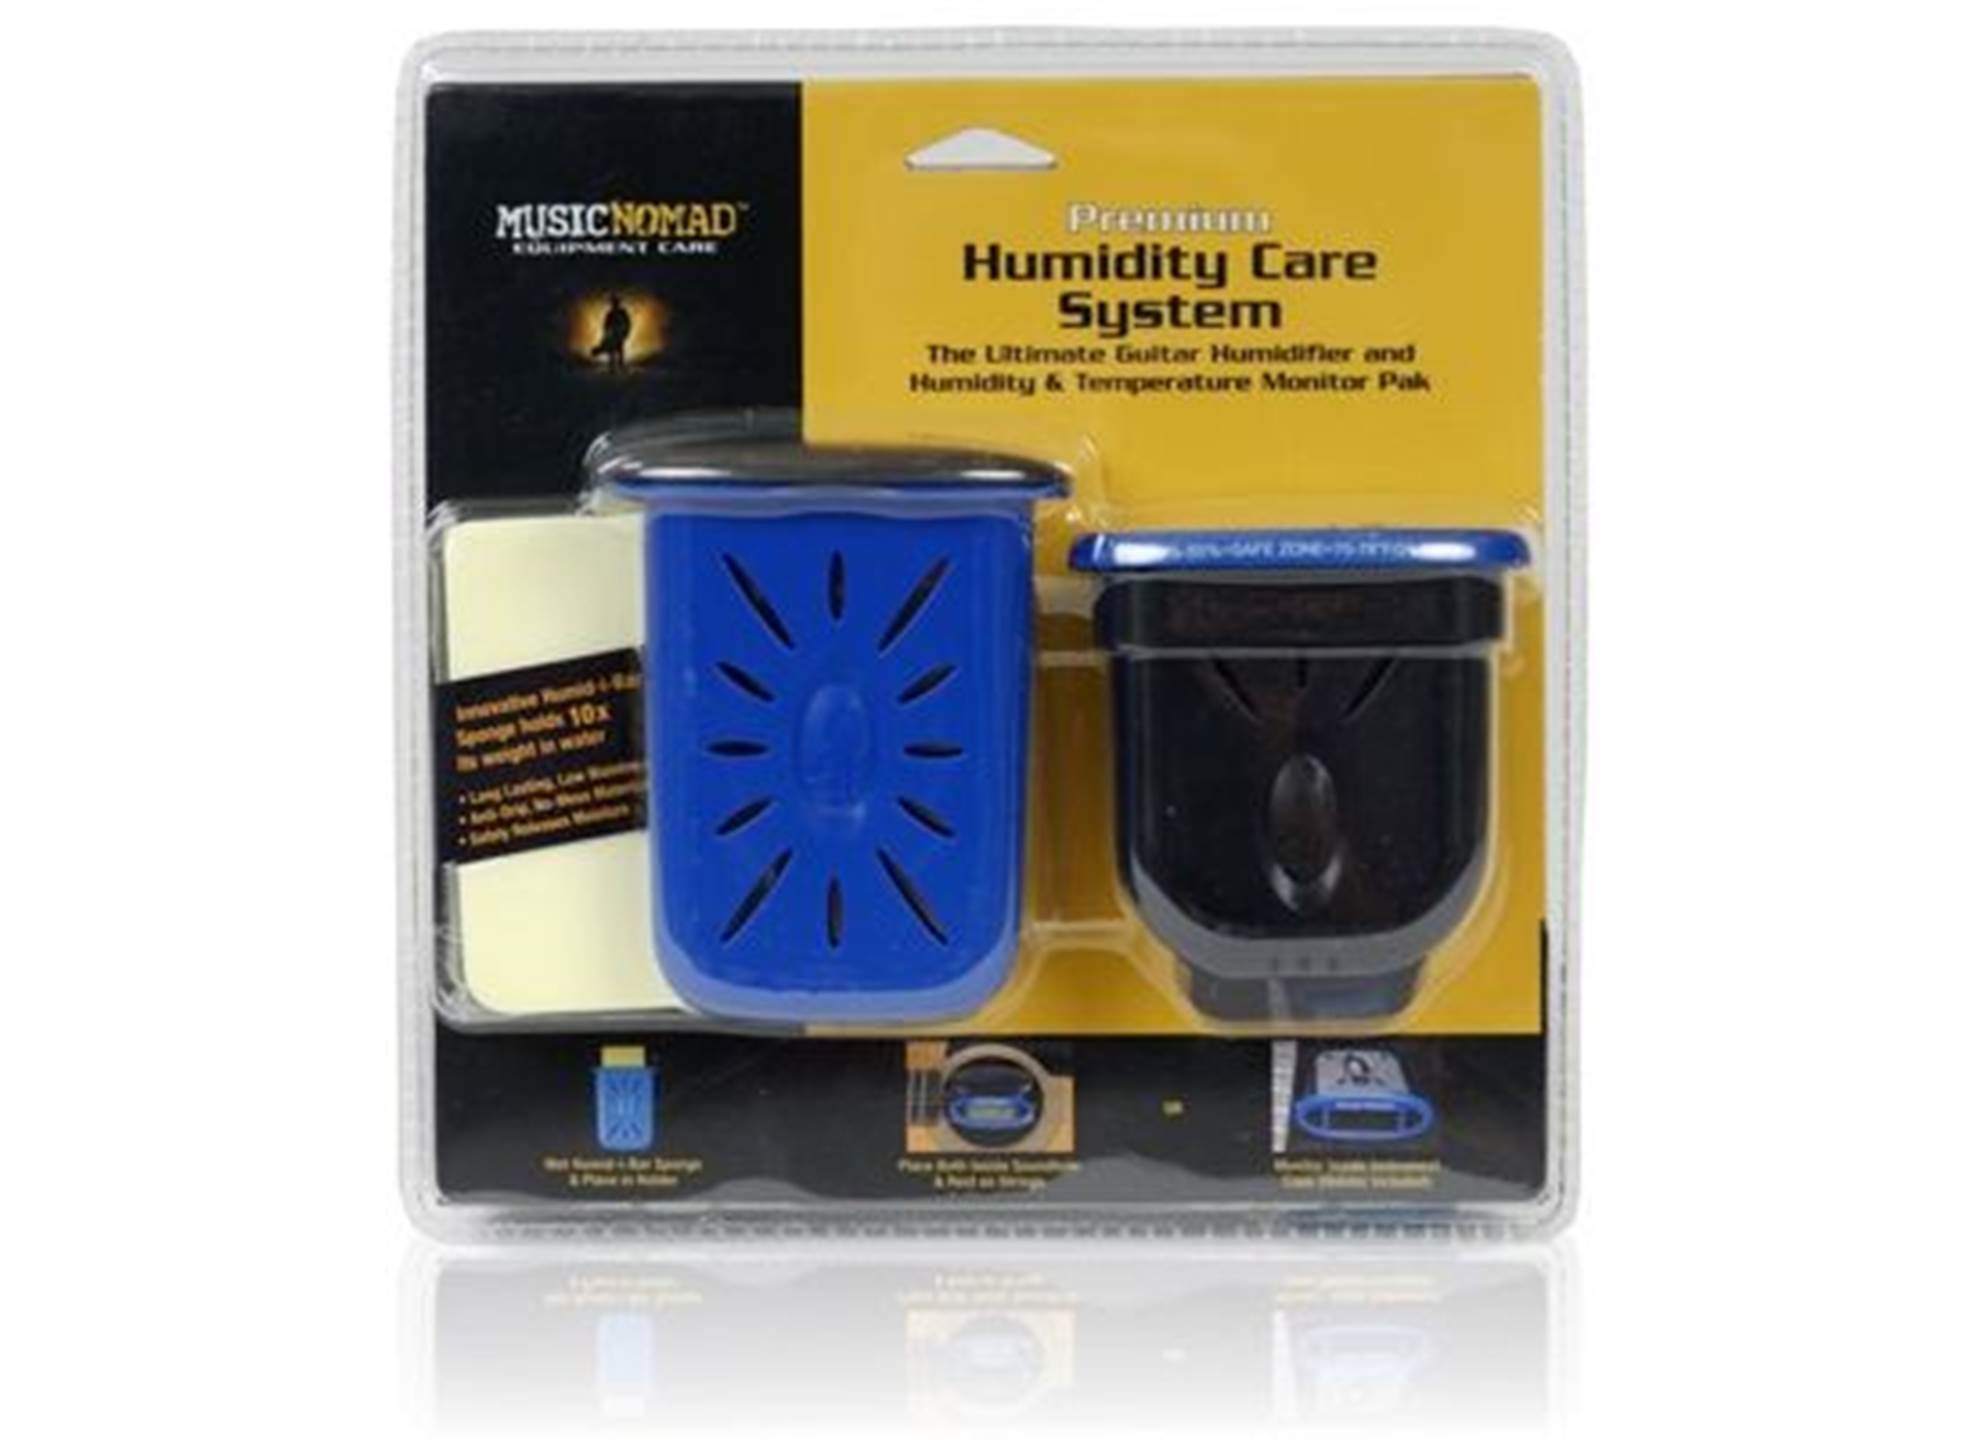 Premium Humidity Care System